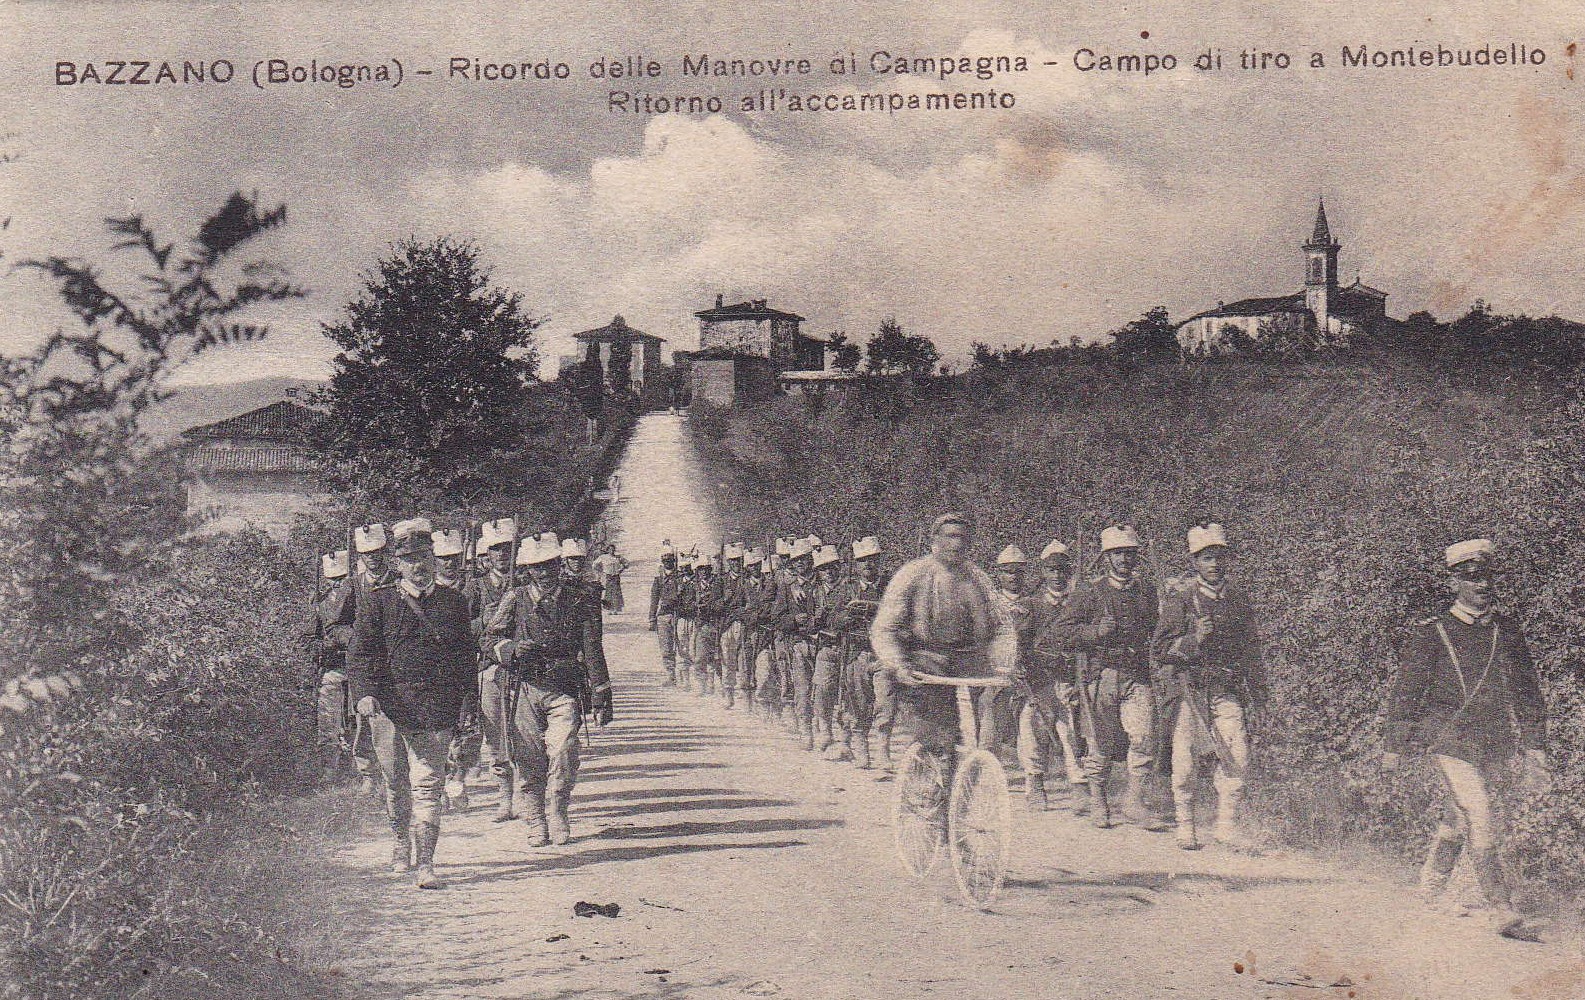 Grande Guerra a Valsamoggia: Cartolina che mostra un momento delle esercitazioni militari nella zona di Bazzano. Foto famiglia Contri